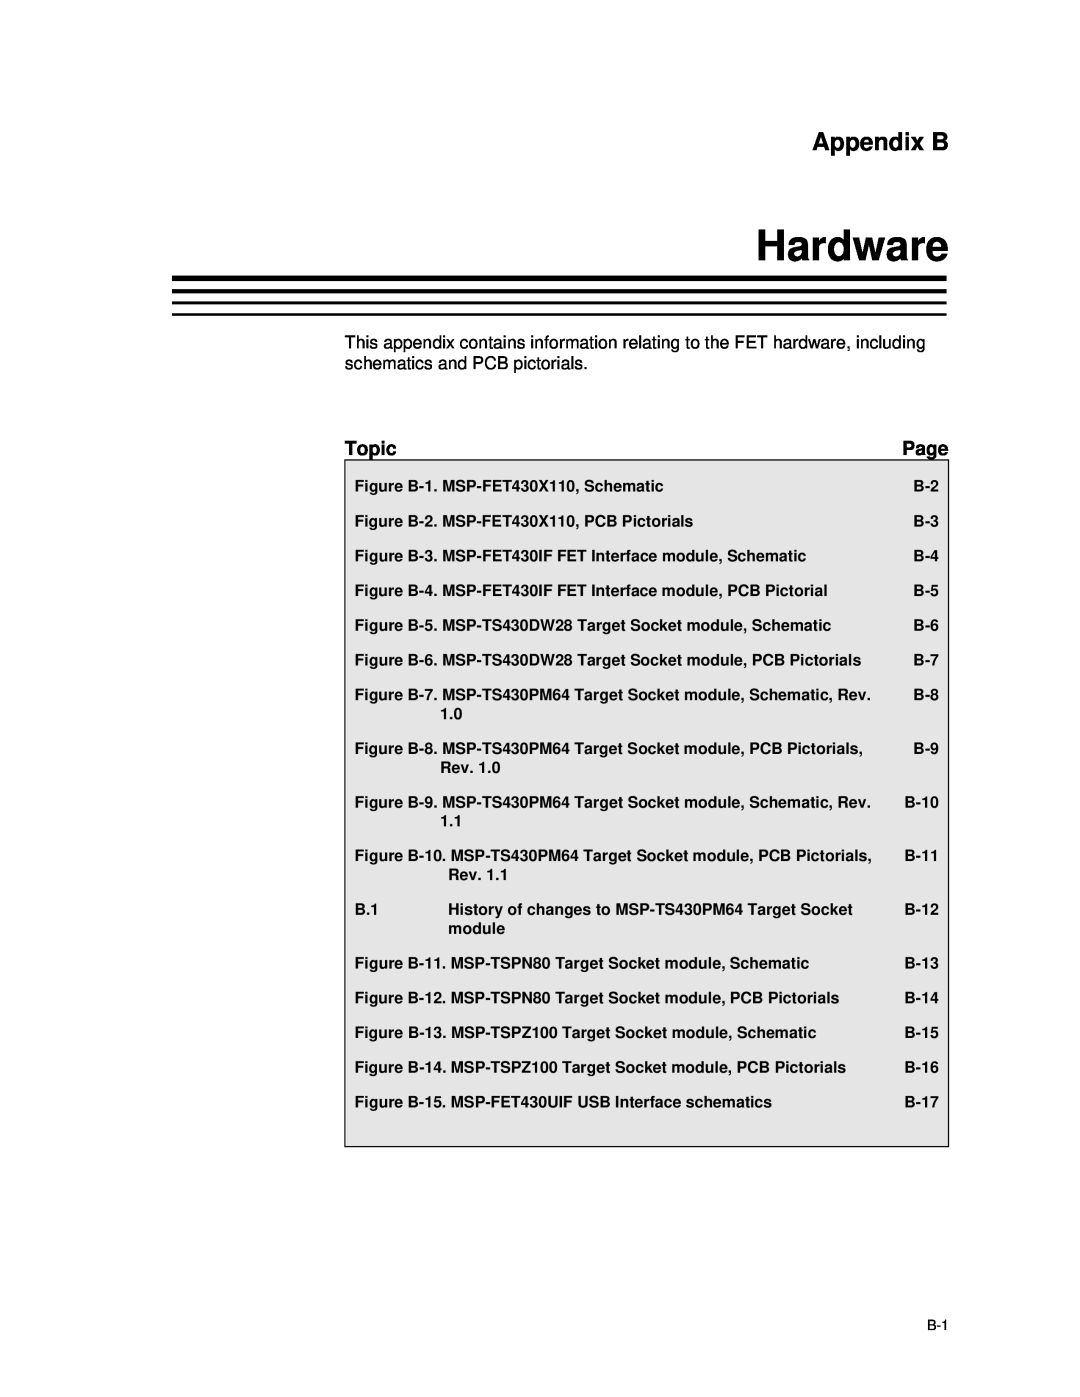 Texas Instruments MSP-FET430 manual Hardware, Appendix B 